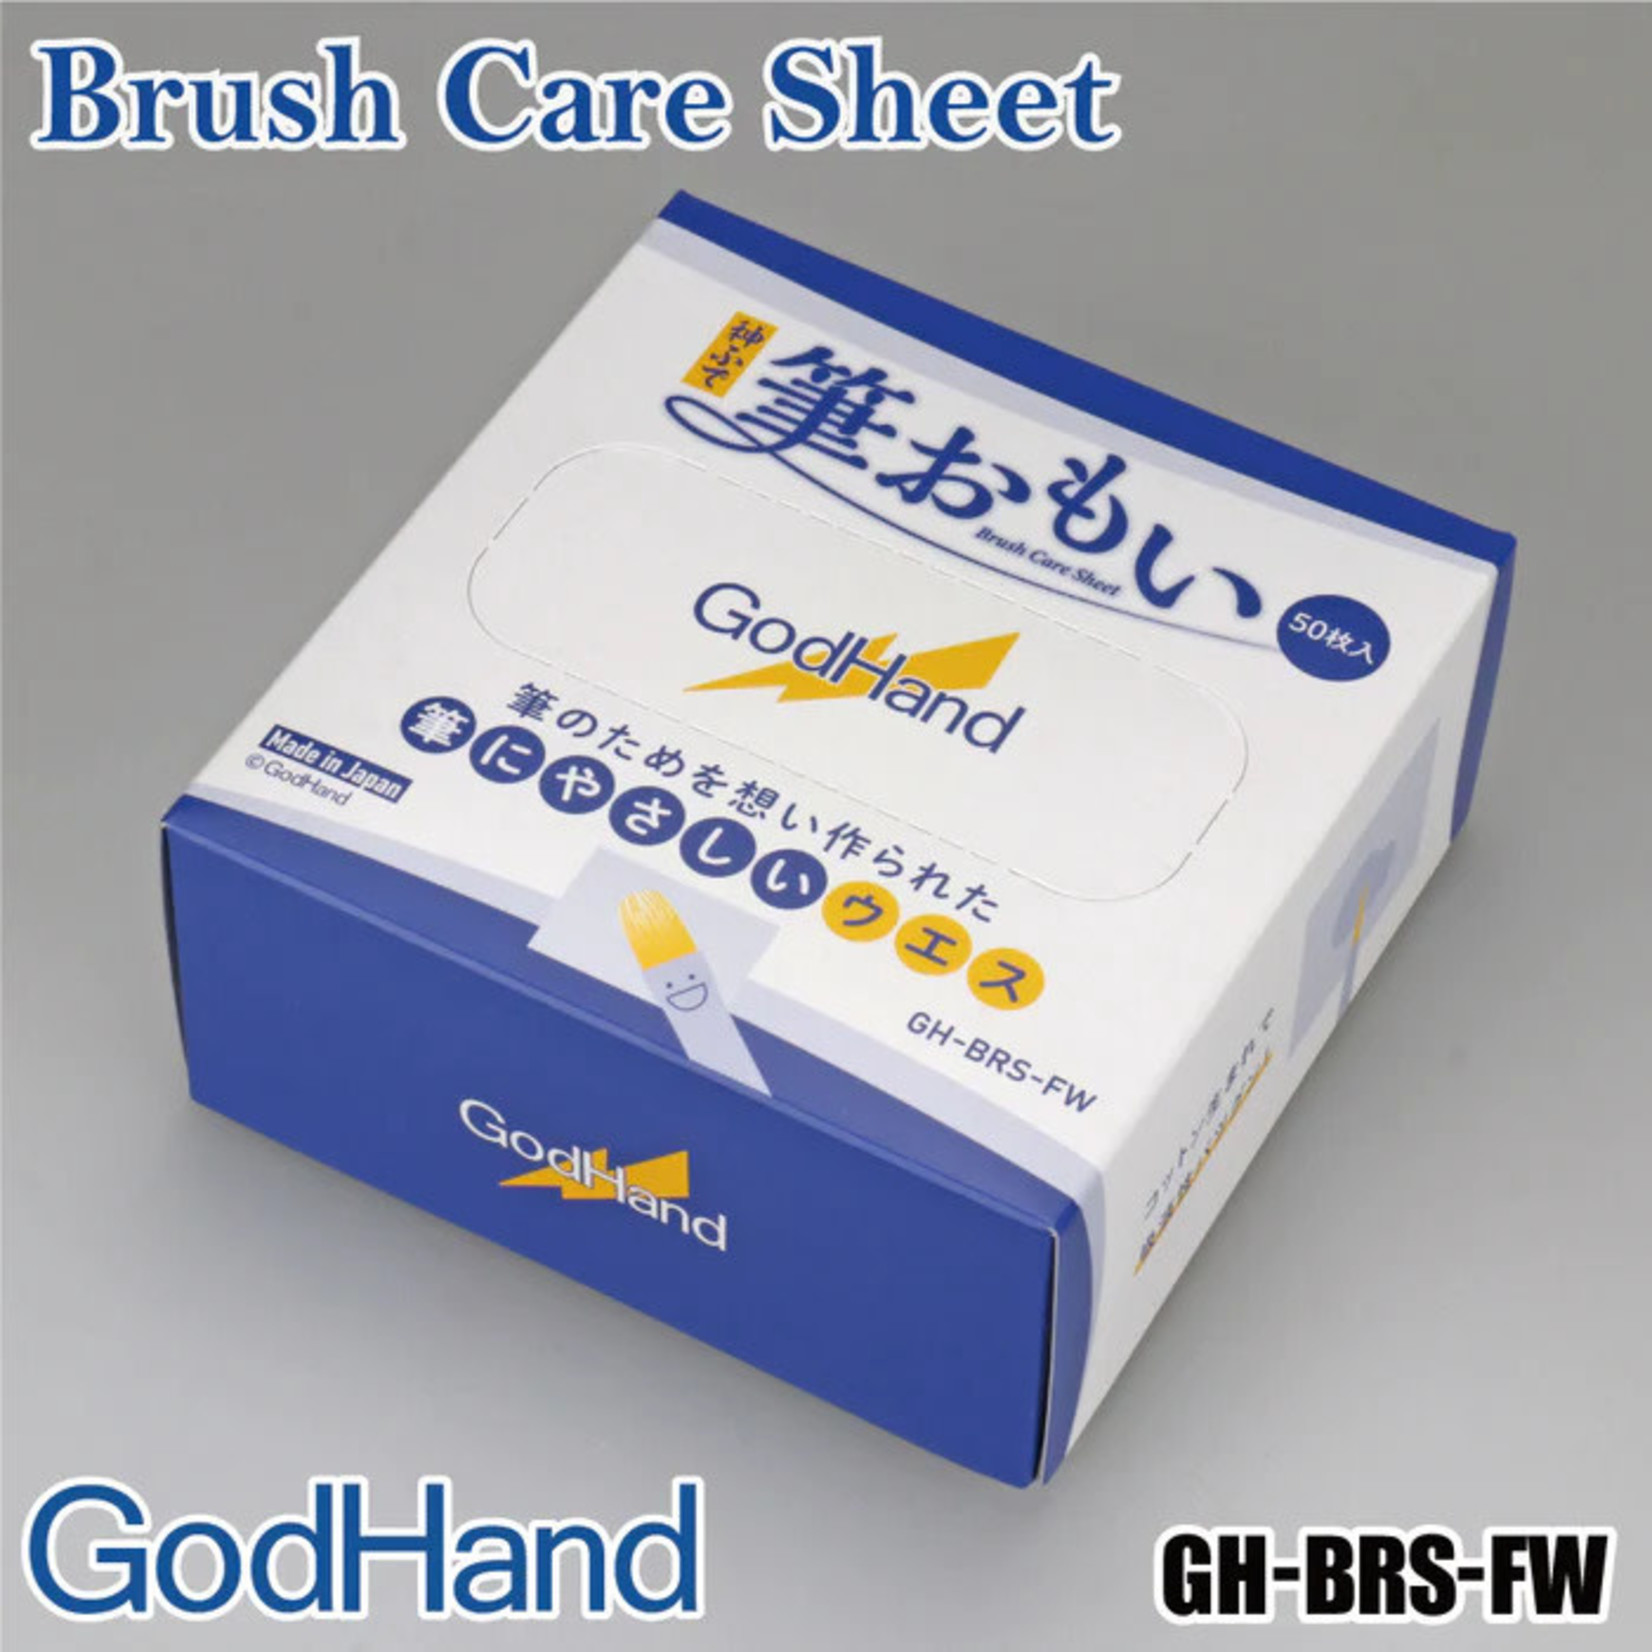 Godhand GODHAND BRS-FW BRUSH CARE SHEET